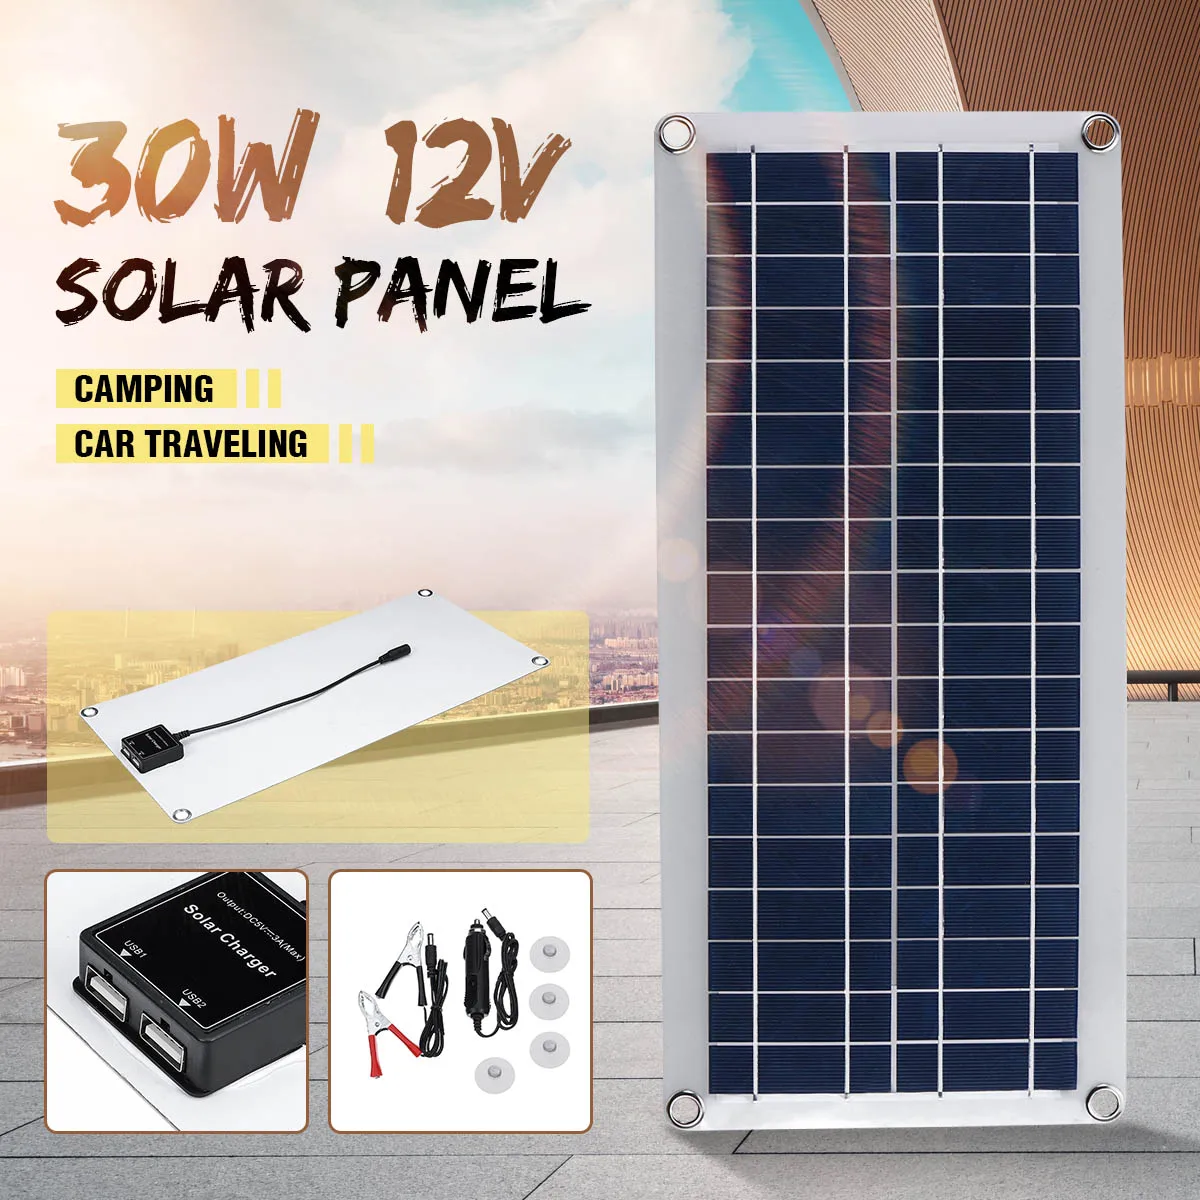 30 Вт солнечная панель 12 В поликристаллический двойной USB мощность портативный солнечный сотовый автомобиль корабль Кемпинг телефон зарядное устройство ж/Открытый Солнечное зарядное устройство